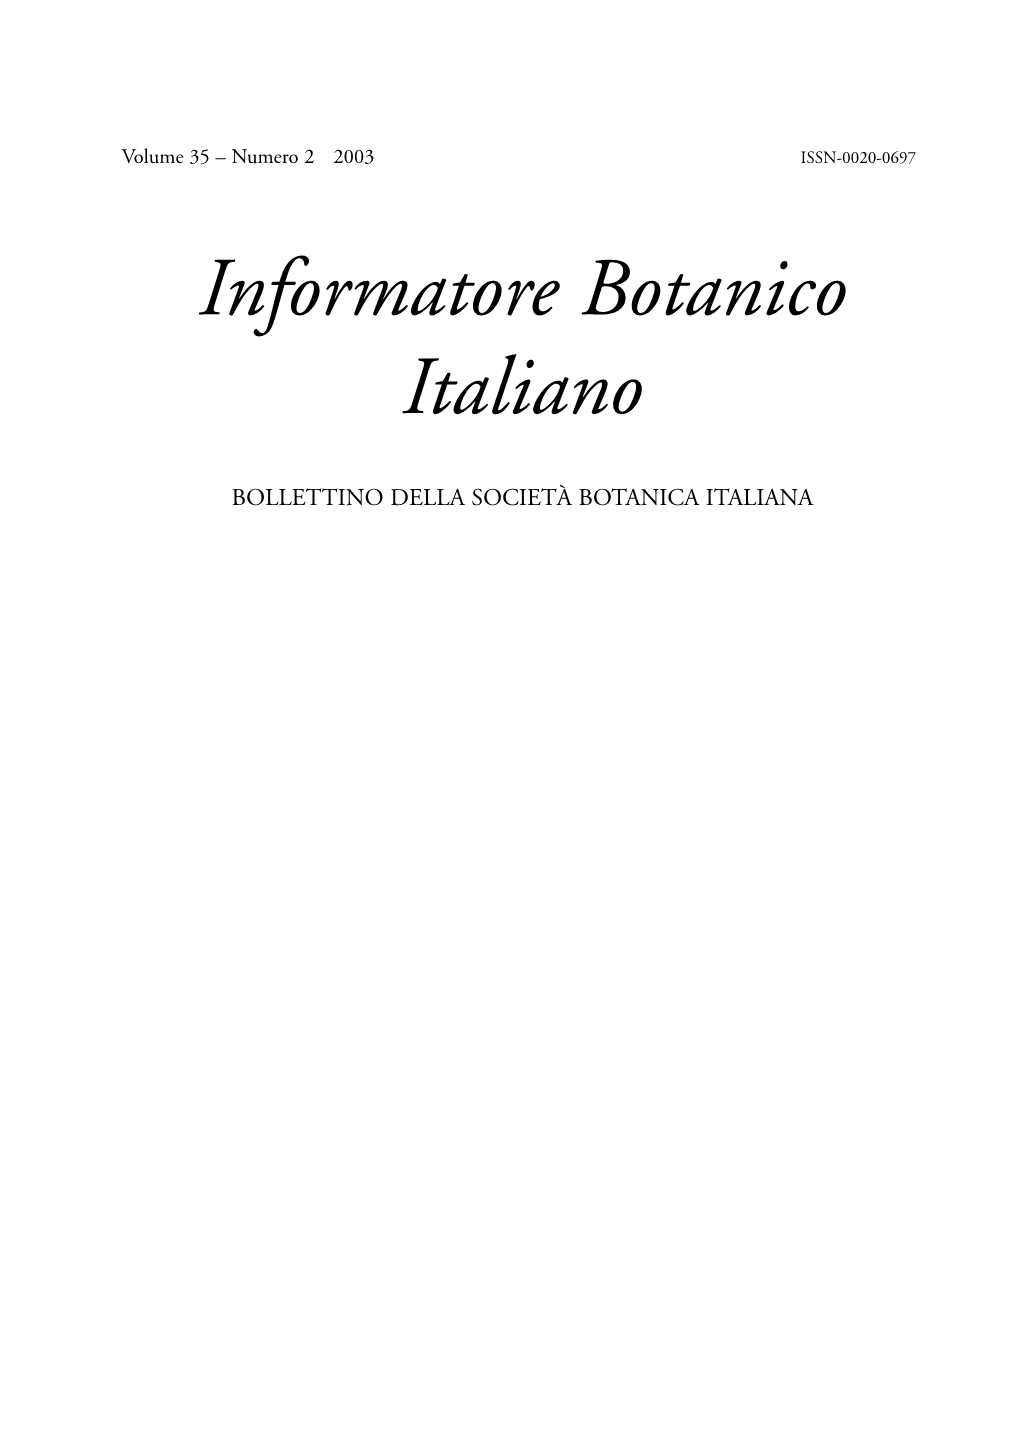 Informatore Botanico Italiano